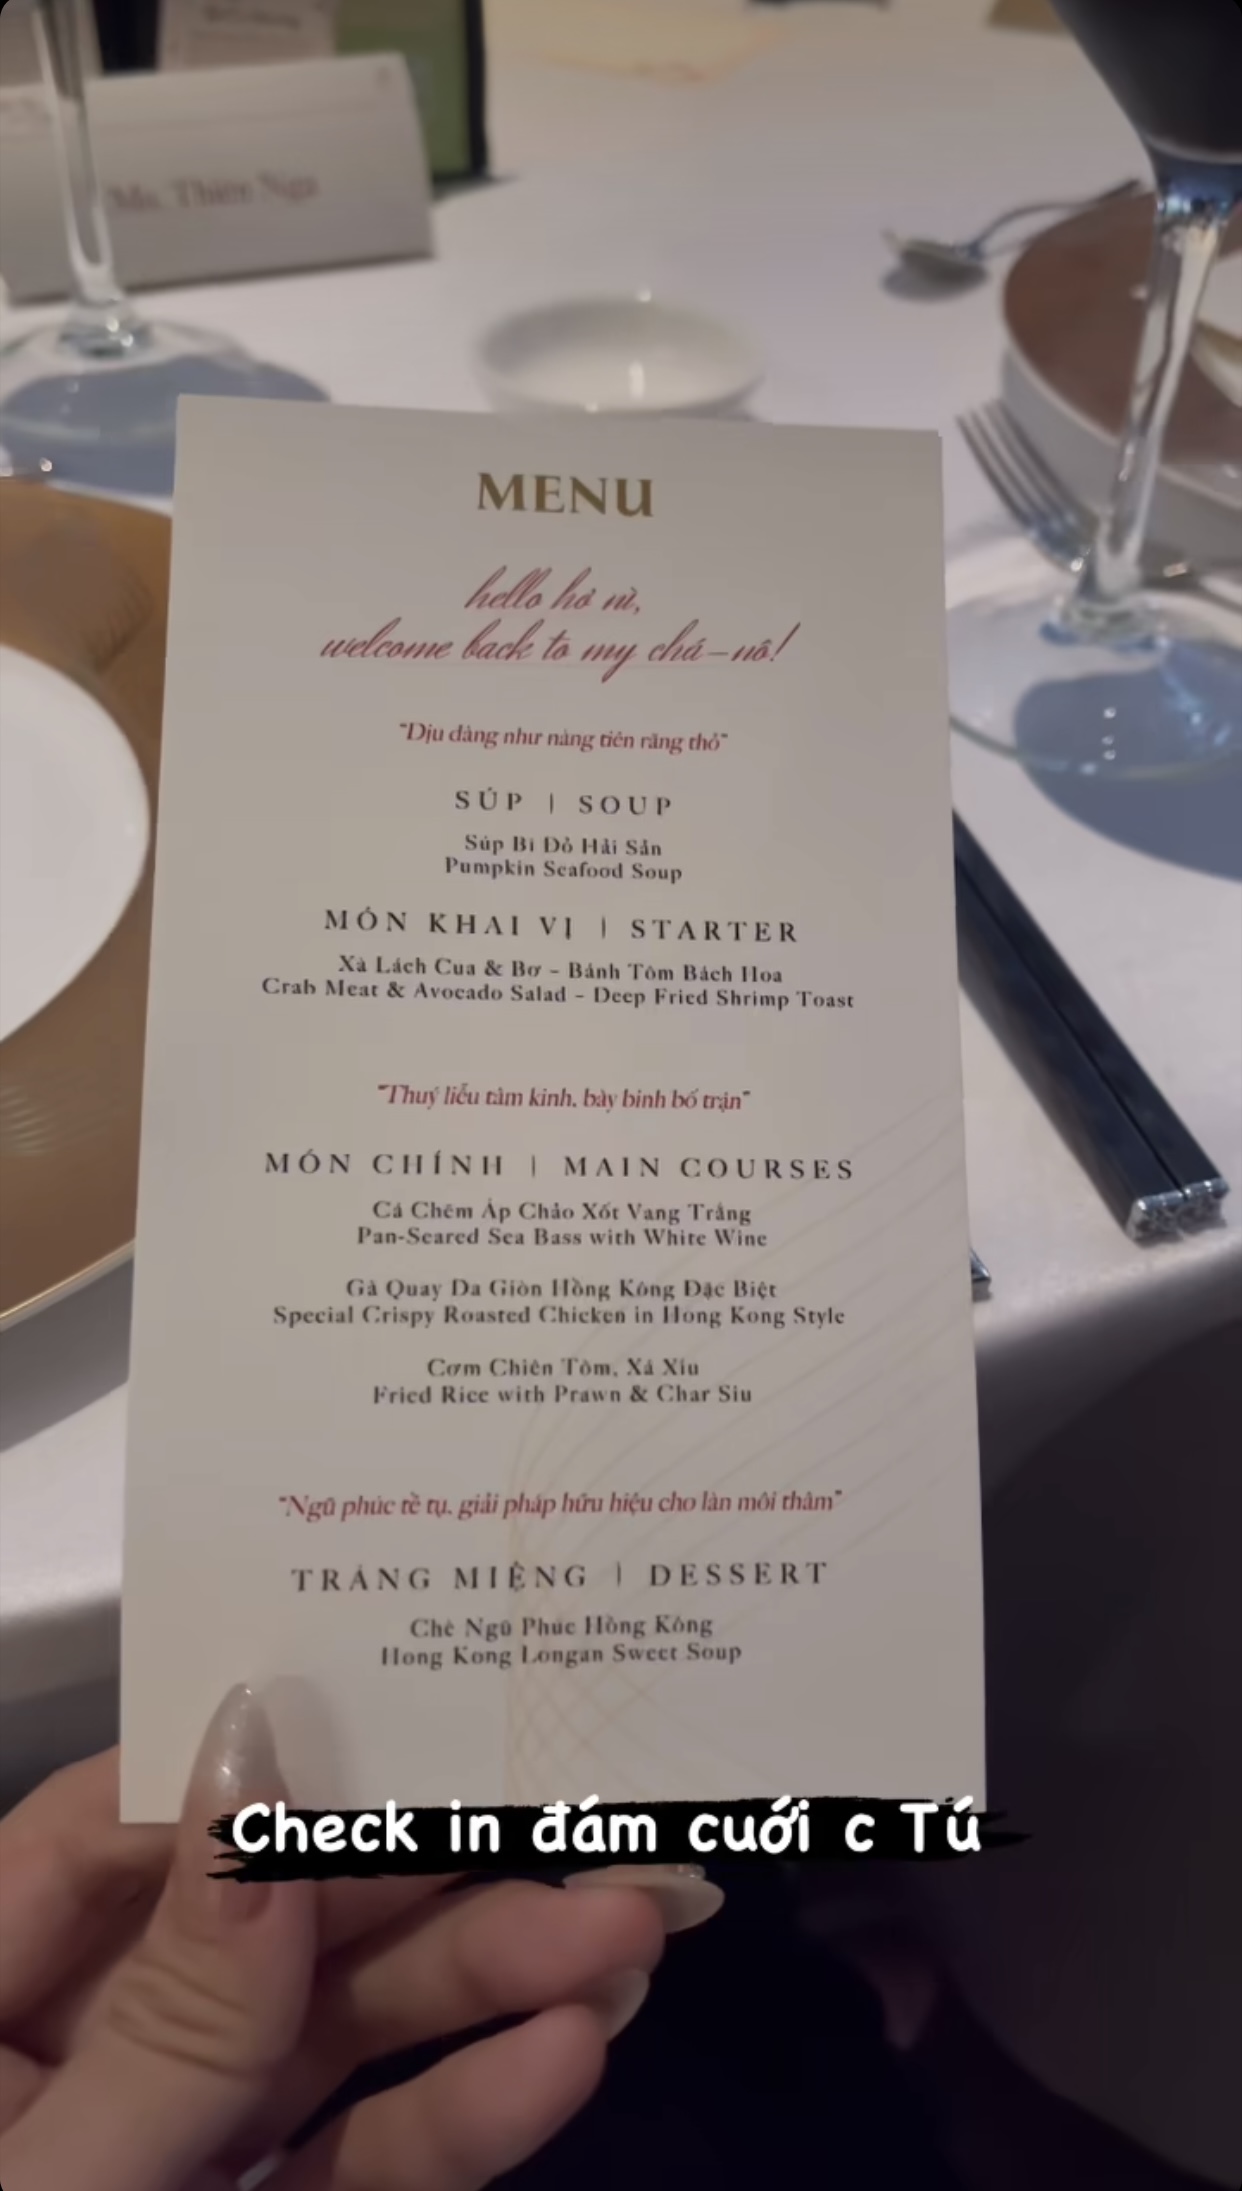 Nóng hổi menu tiệc cưới Minh Tú: Đồ ăn ngon nhưng xuất hiện 1 chi tiết đặc biệt khiến ai cũng bật cười - Ảnh 1.